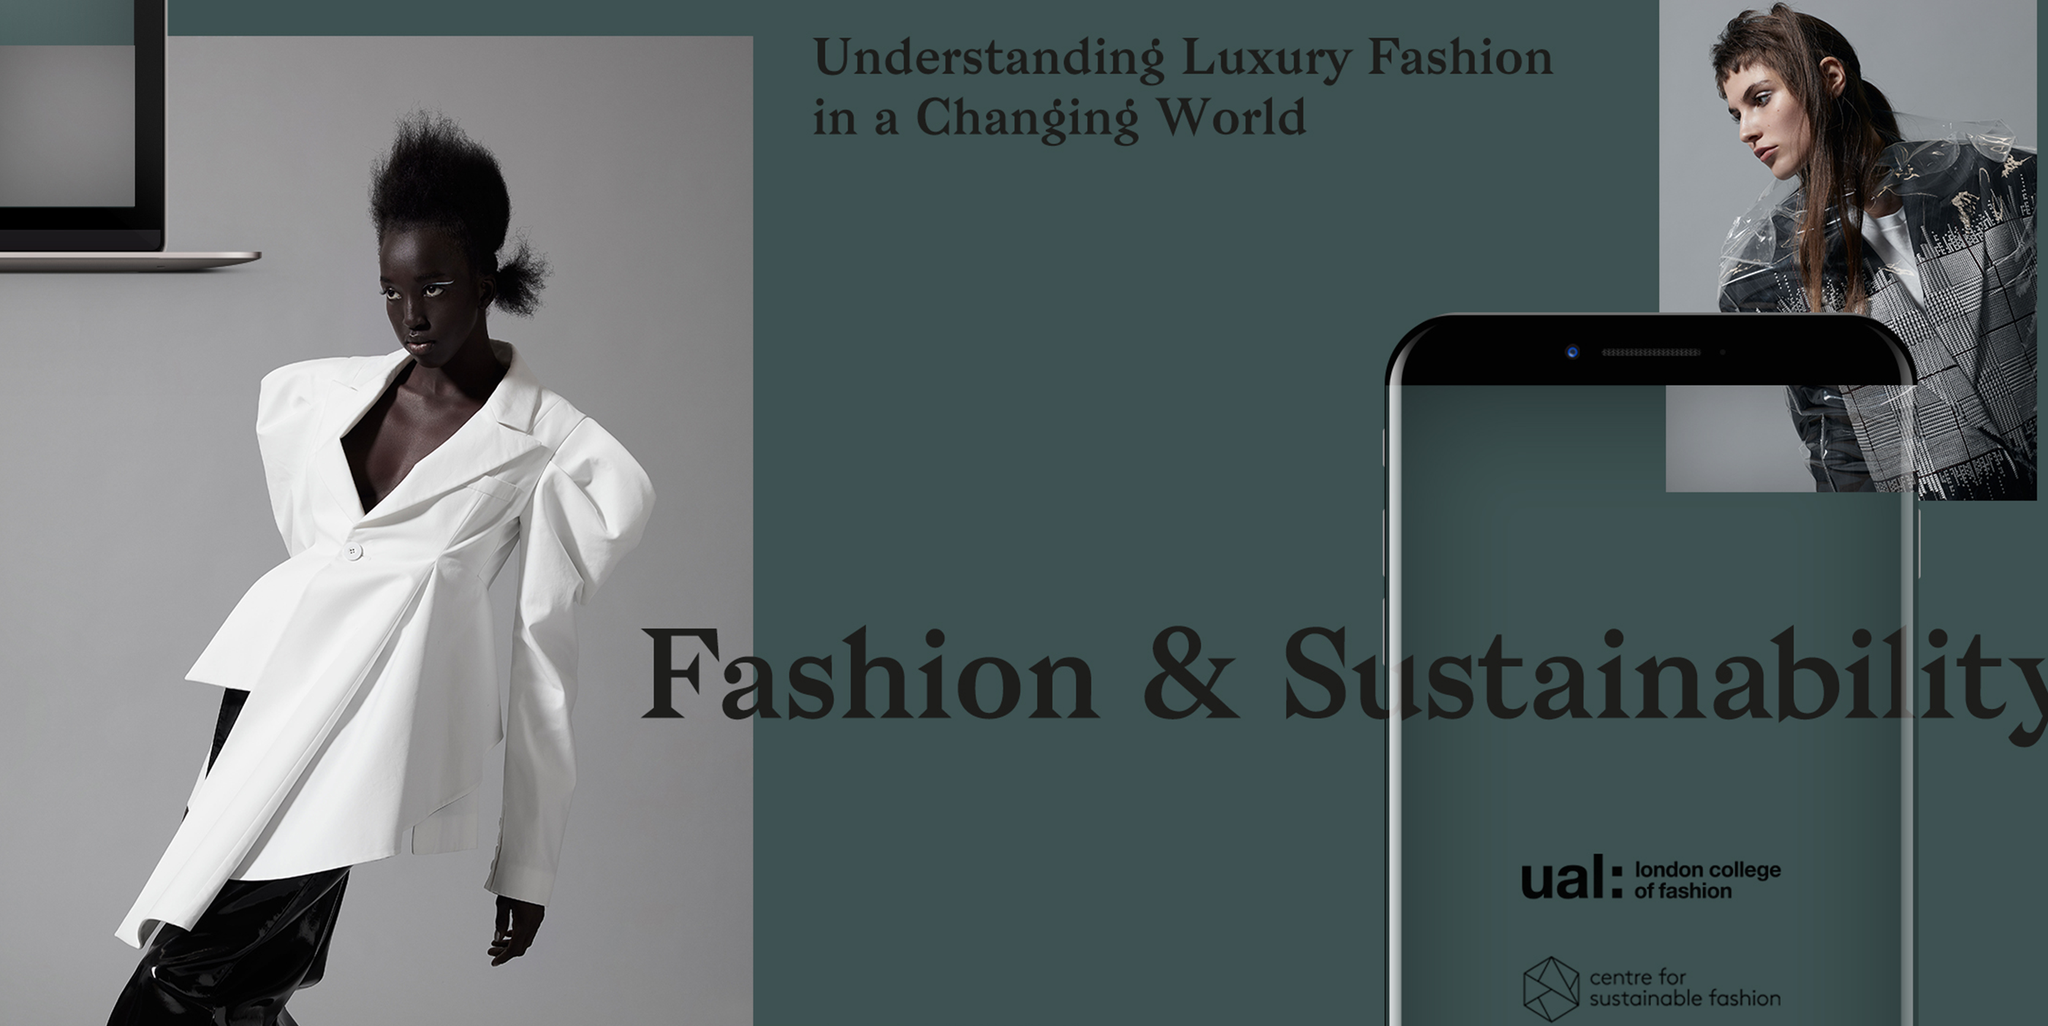 Kering's luxury brands